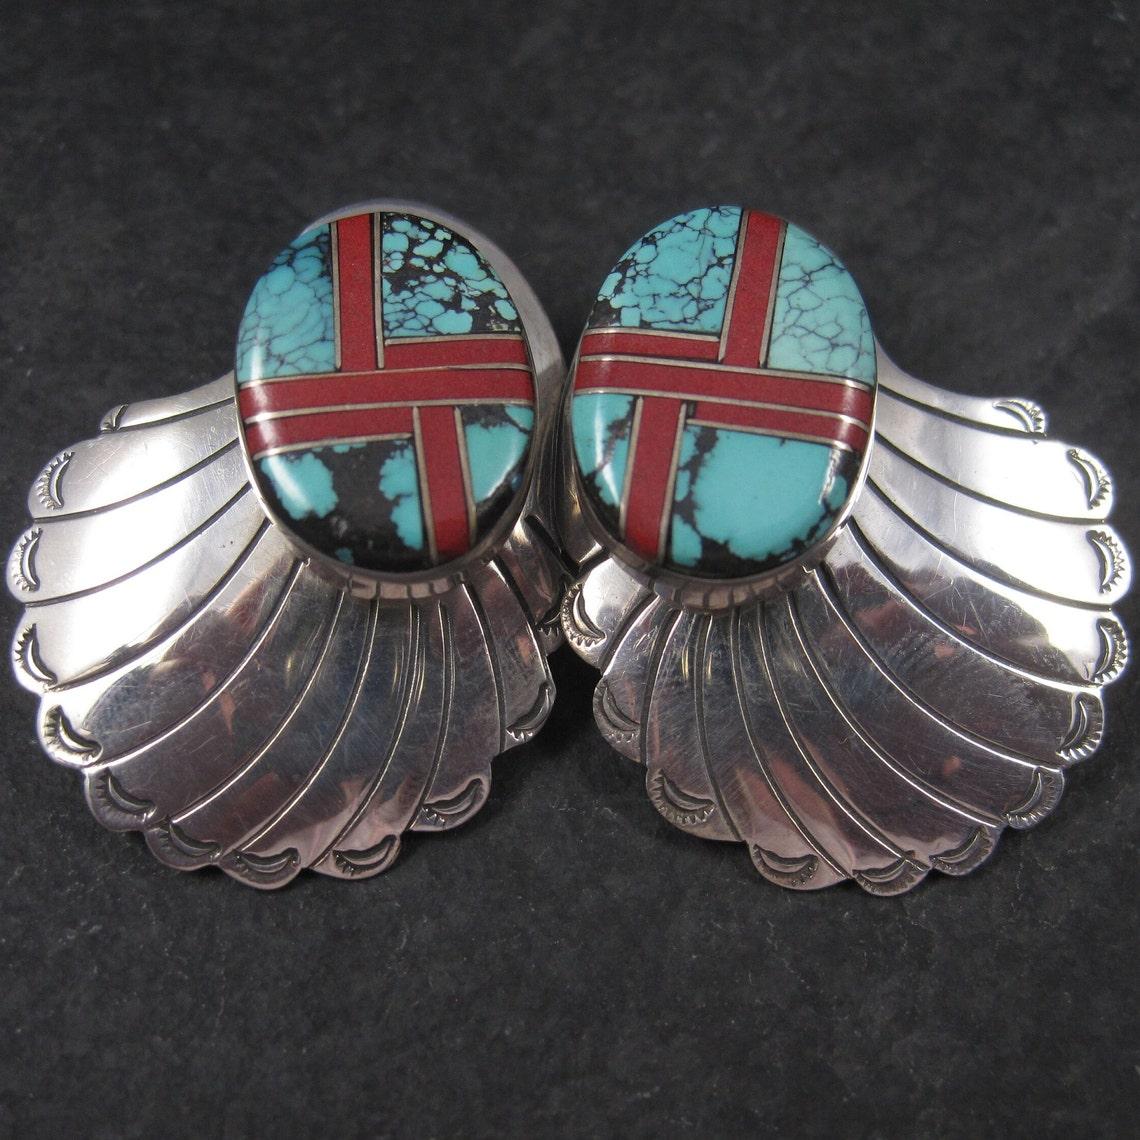 Diese wunderschönen Navajo-Ohrringe im Vintage-Stil sind aus Sterlingsilber.
Sie weisen Einlagen aus Türkis und Koralle auf.

Abmessungen: 1 1/8 x 1 7/16 Zoll.
Gewicht: 17.8 Gramm

Markierungen: Sterling

Zustand: Ausgezeichnet